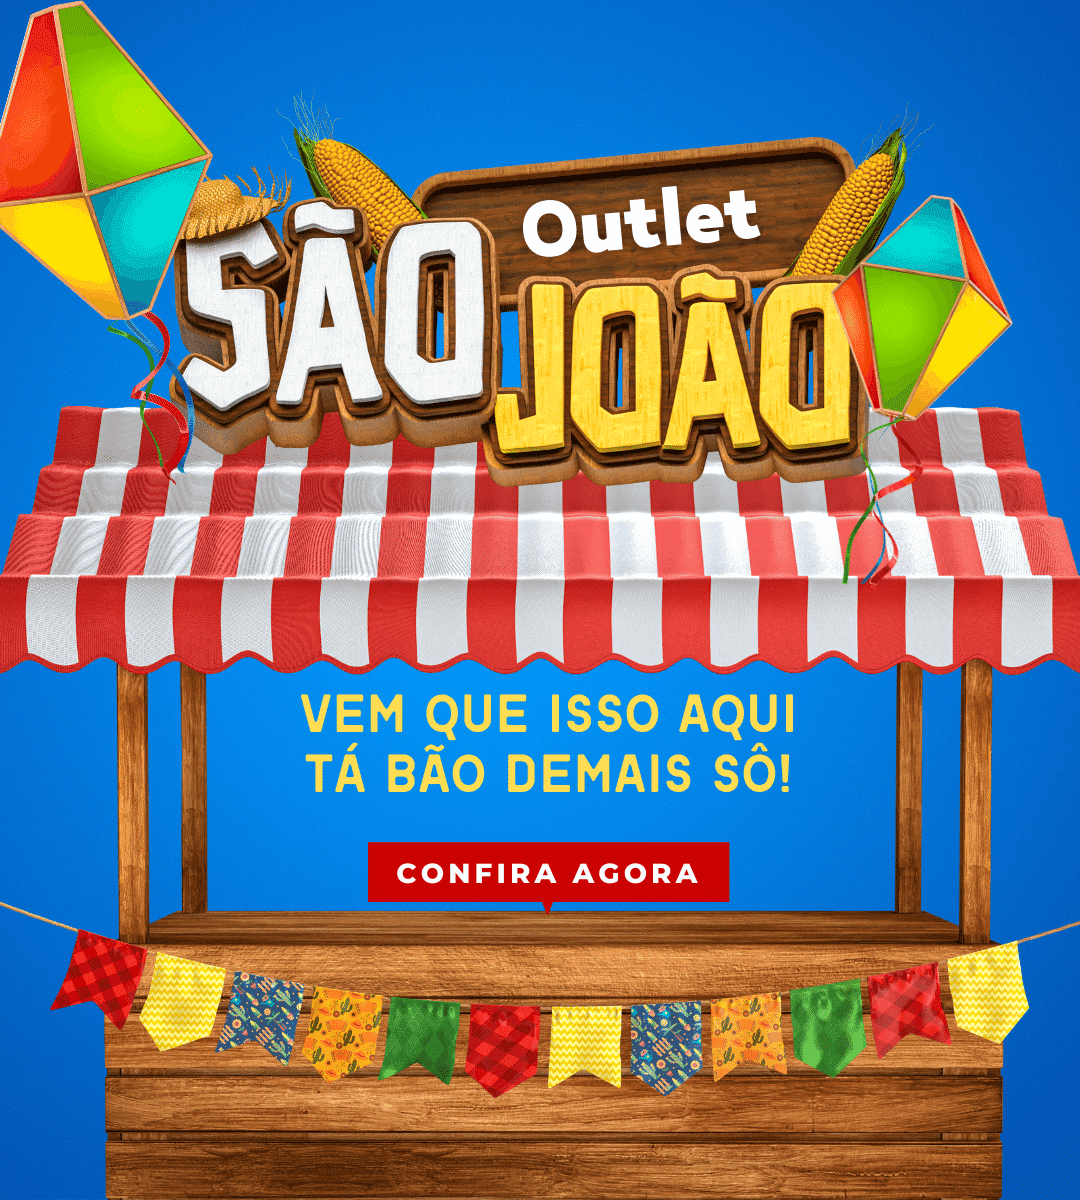 Outlet São João